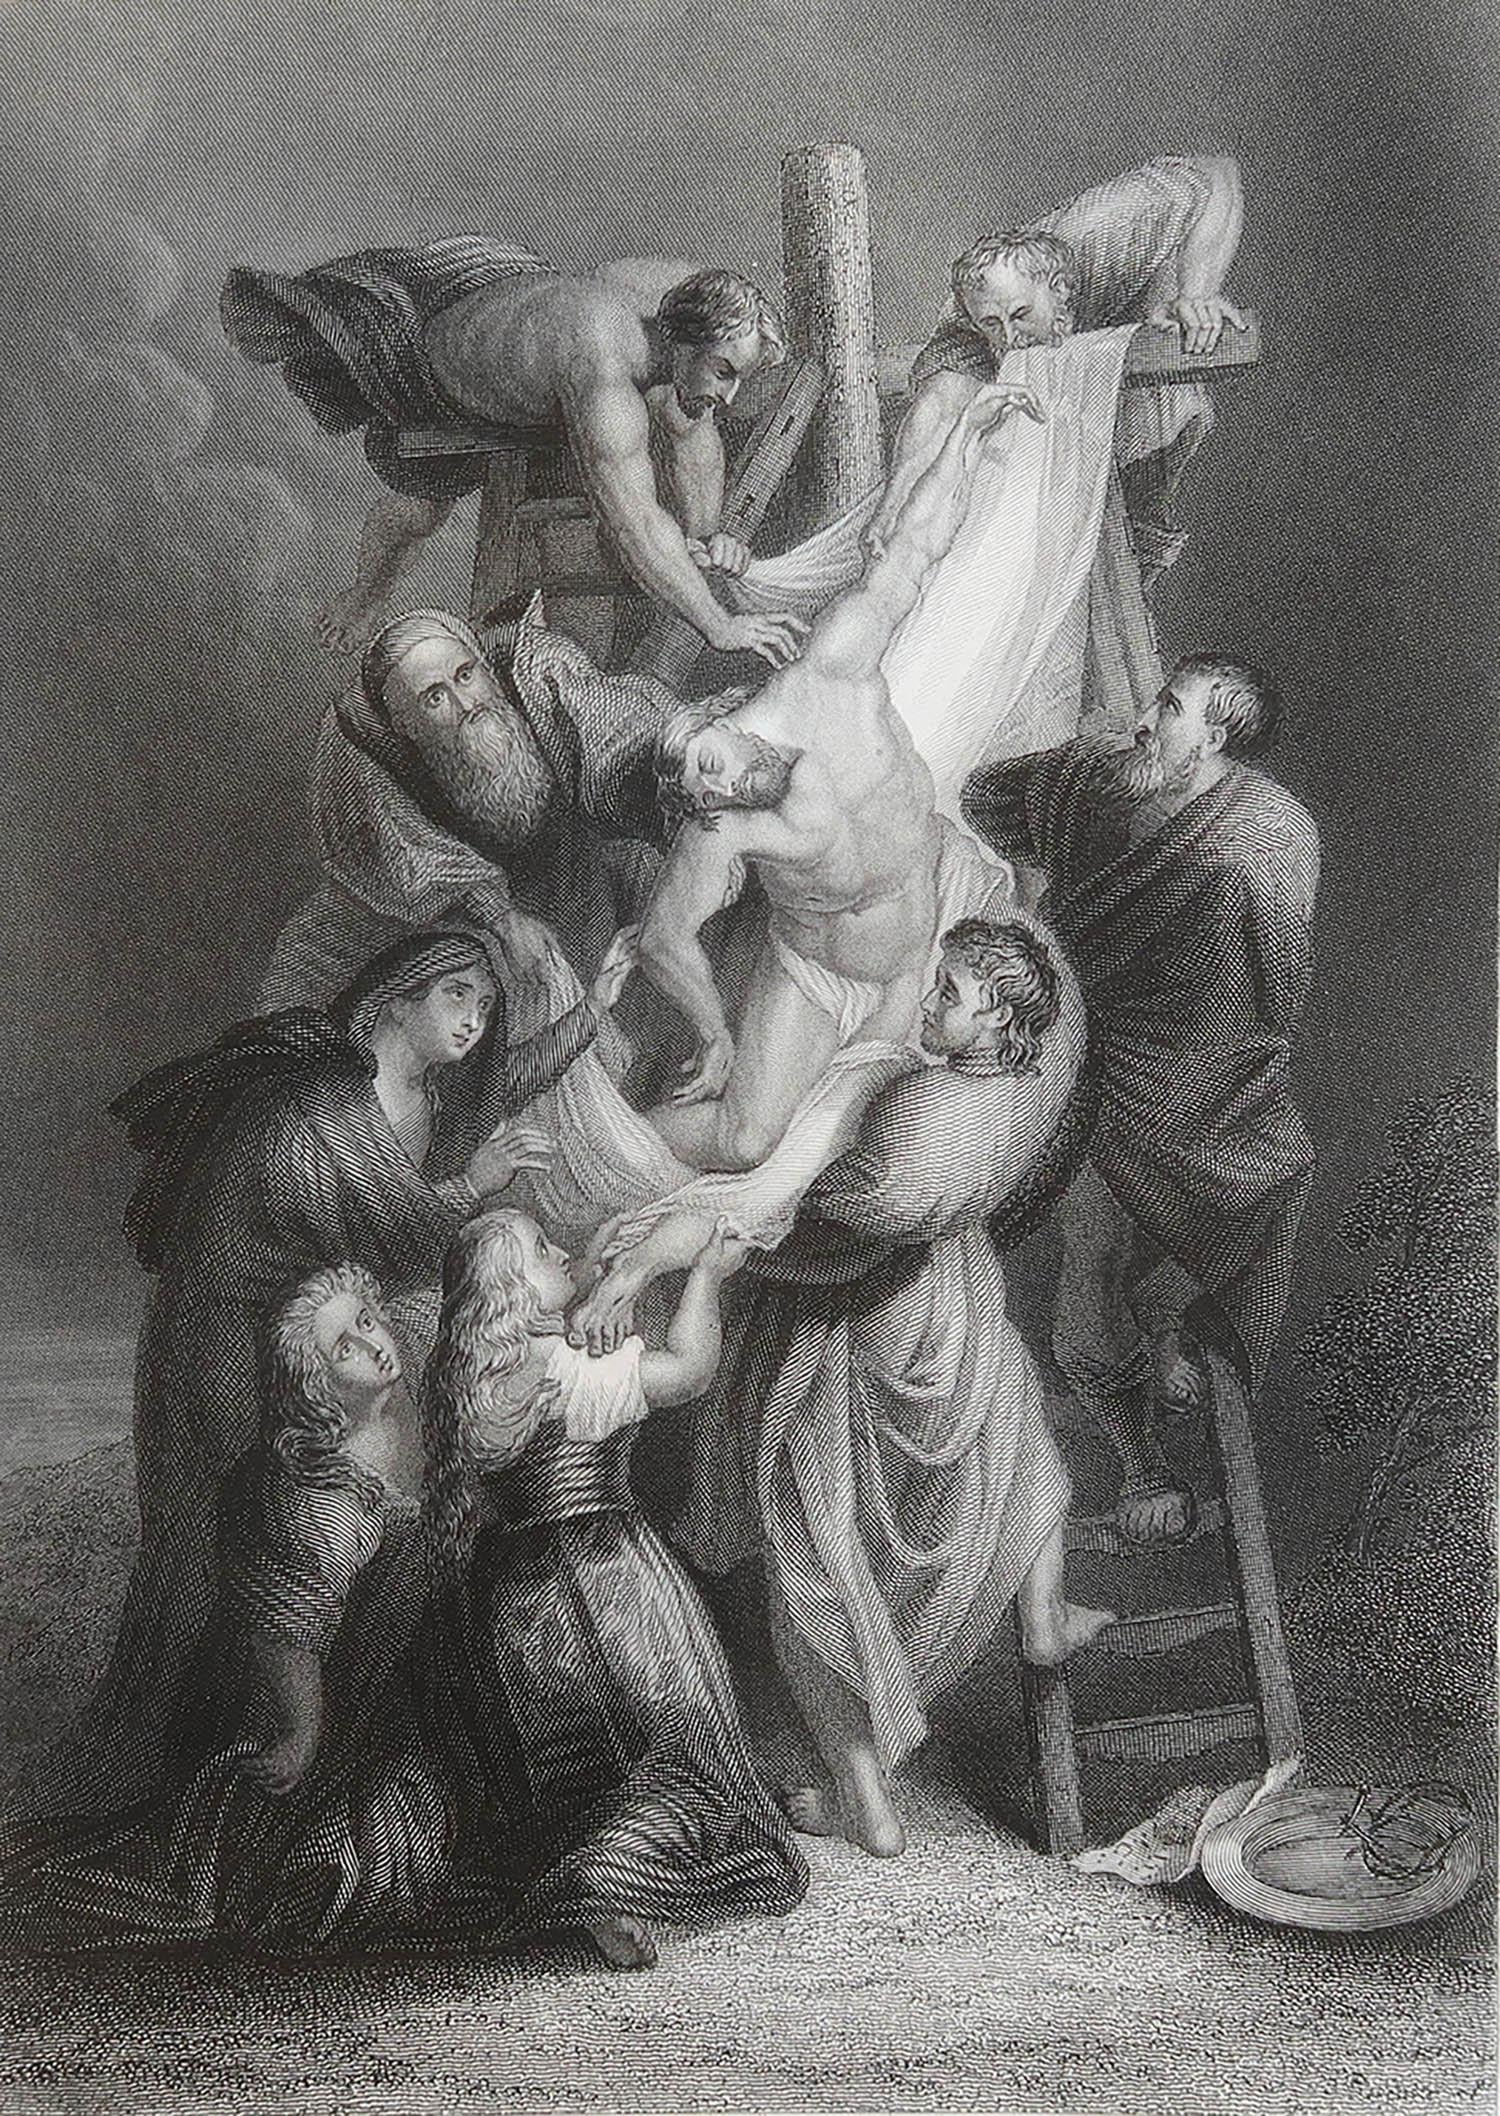 Magnifique image d'après Rubens

Gravure sur acier fin. 

Publié par Sangster, C.C. 1850

Non encadré.

